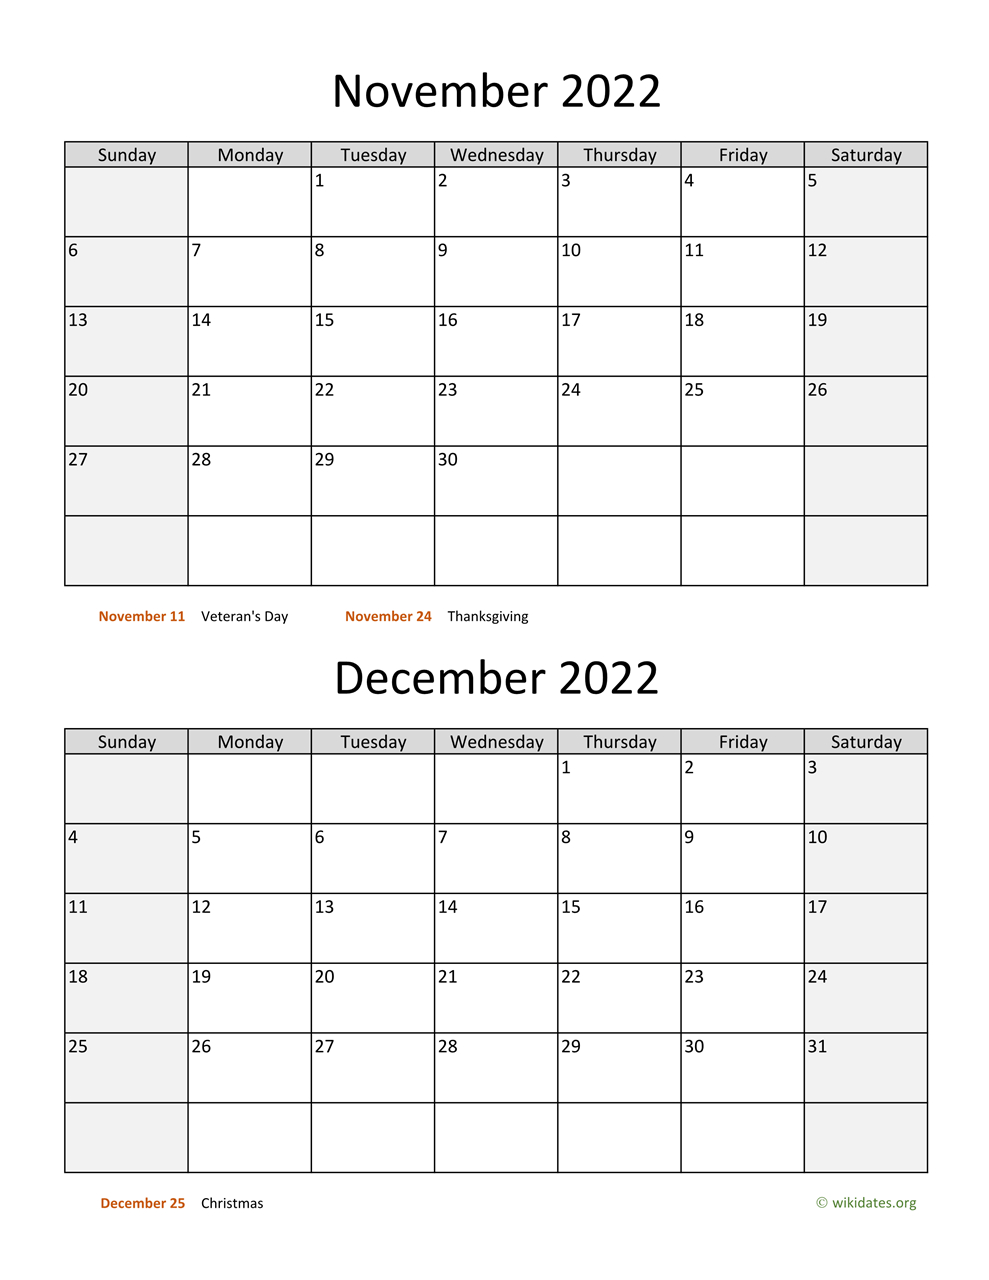 November And December 2022 Calendar | Wikidates November And December 2022